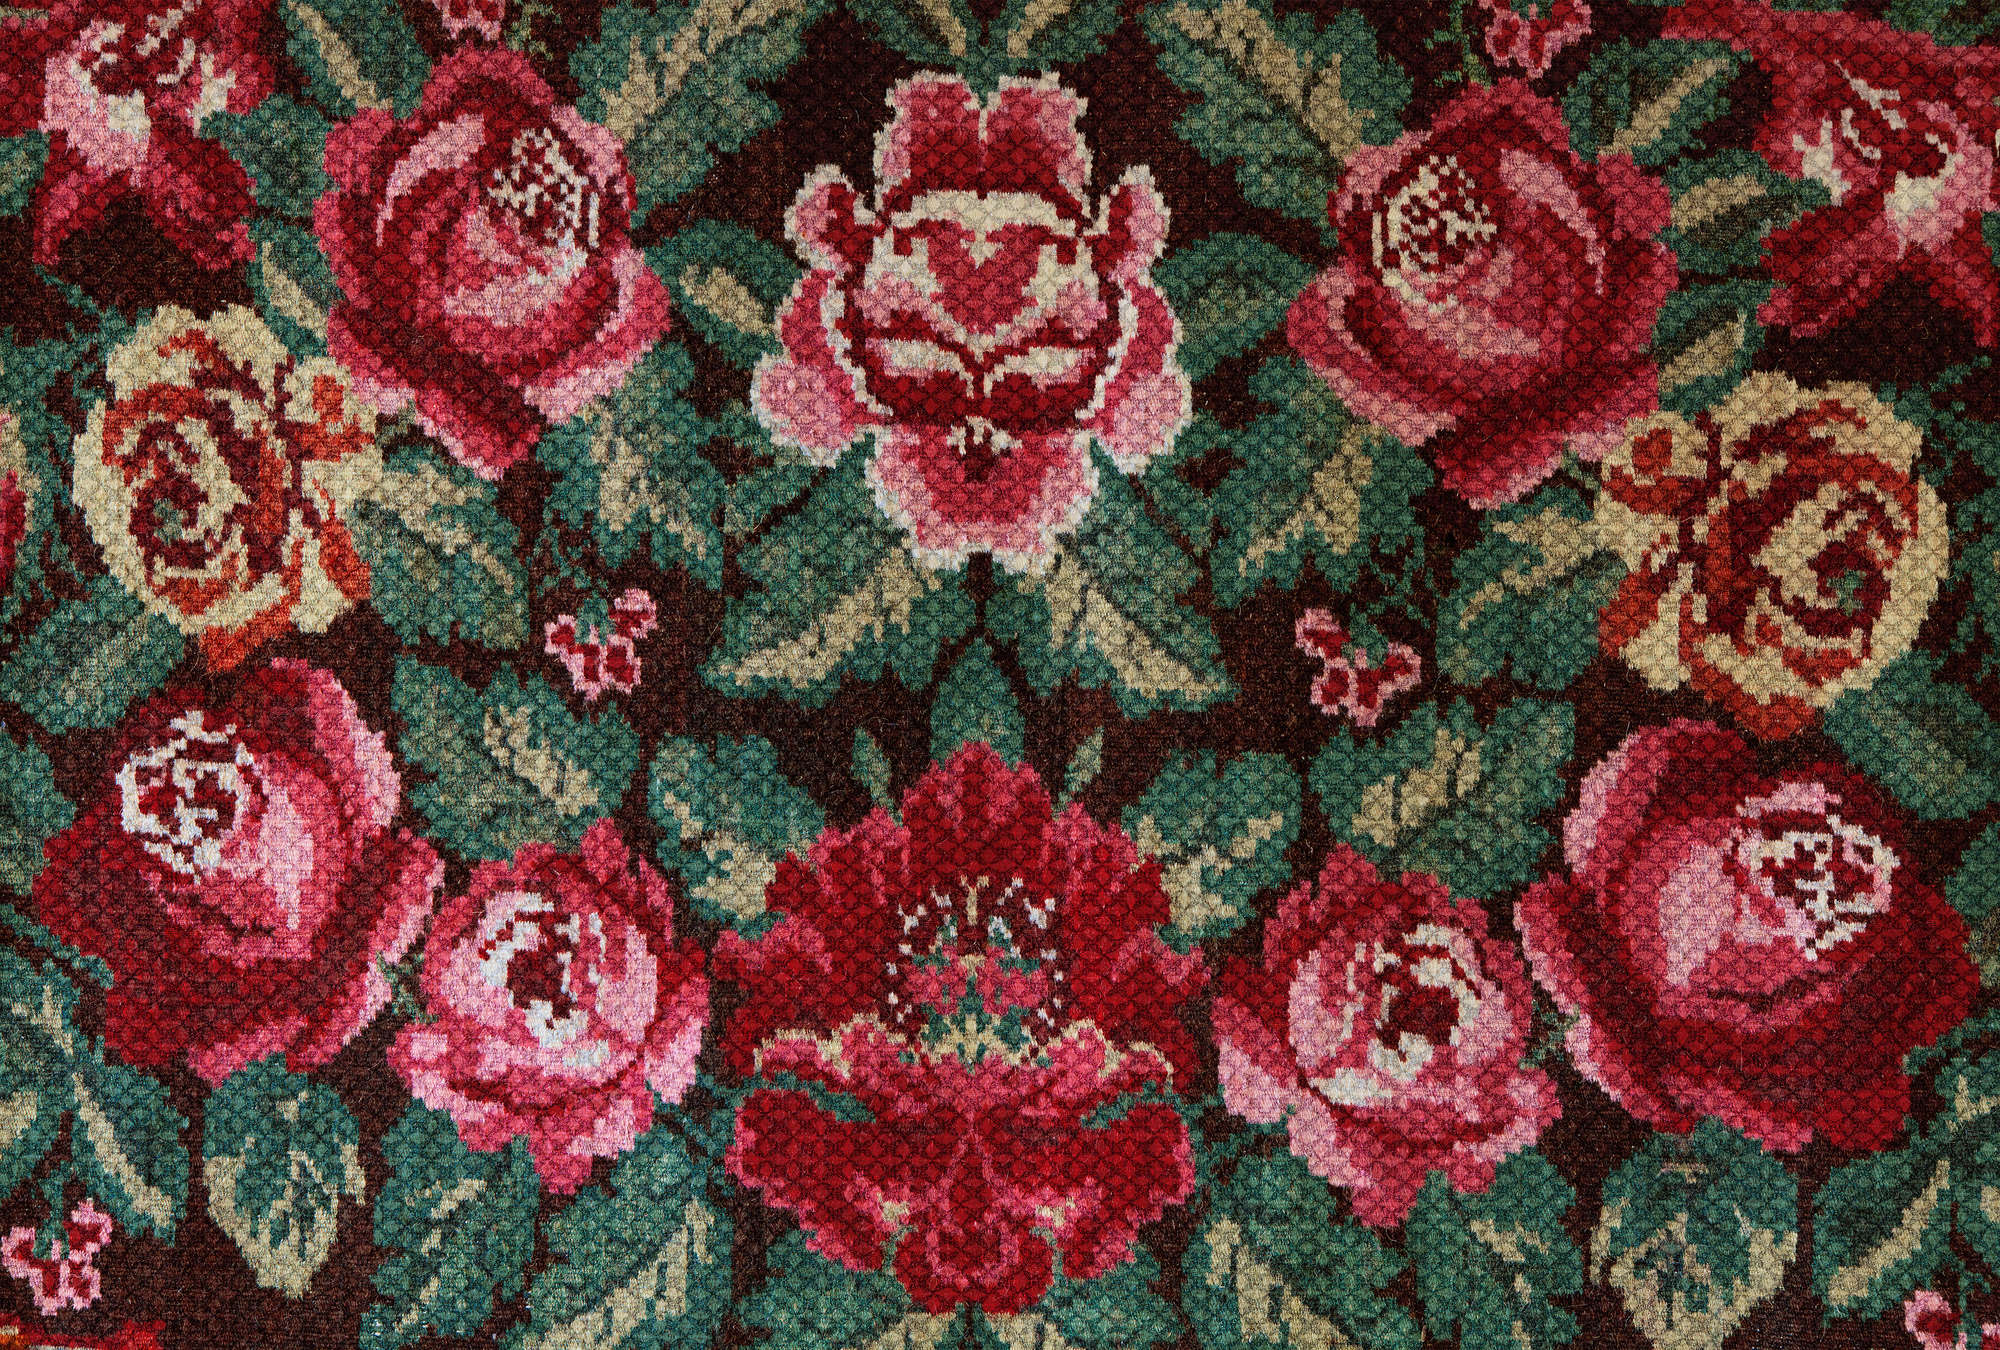             Rosen Fototapete im Folklore Stil & Retro-Design – Rosa, Grün, Rot
        